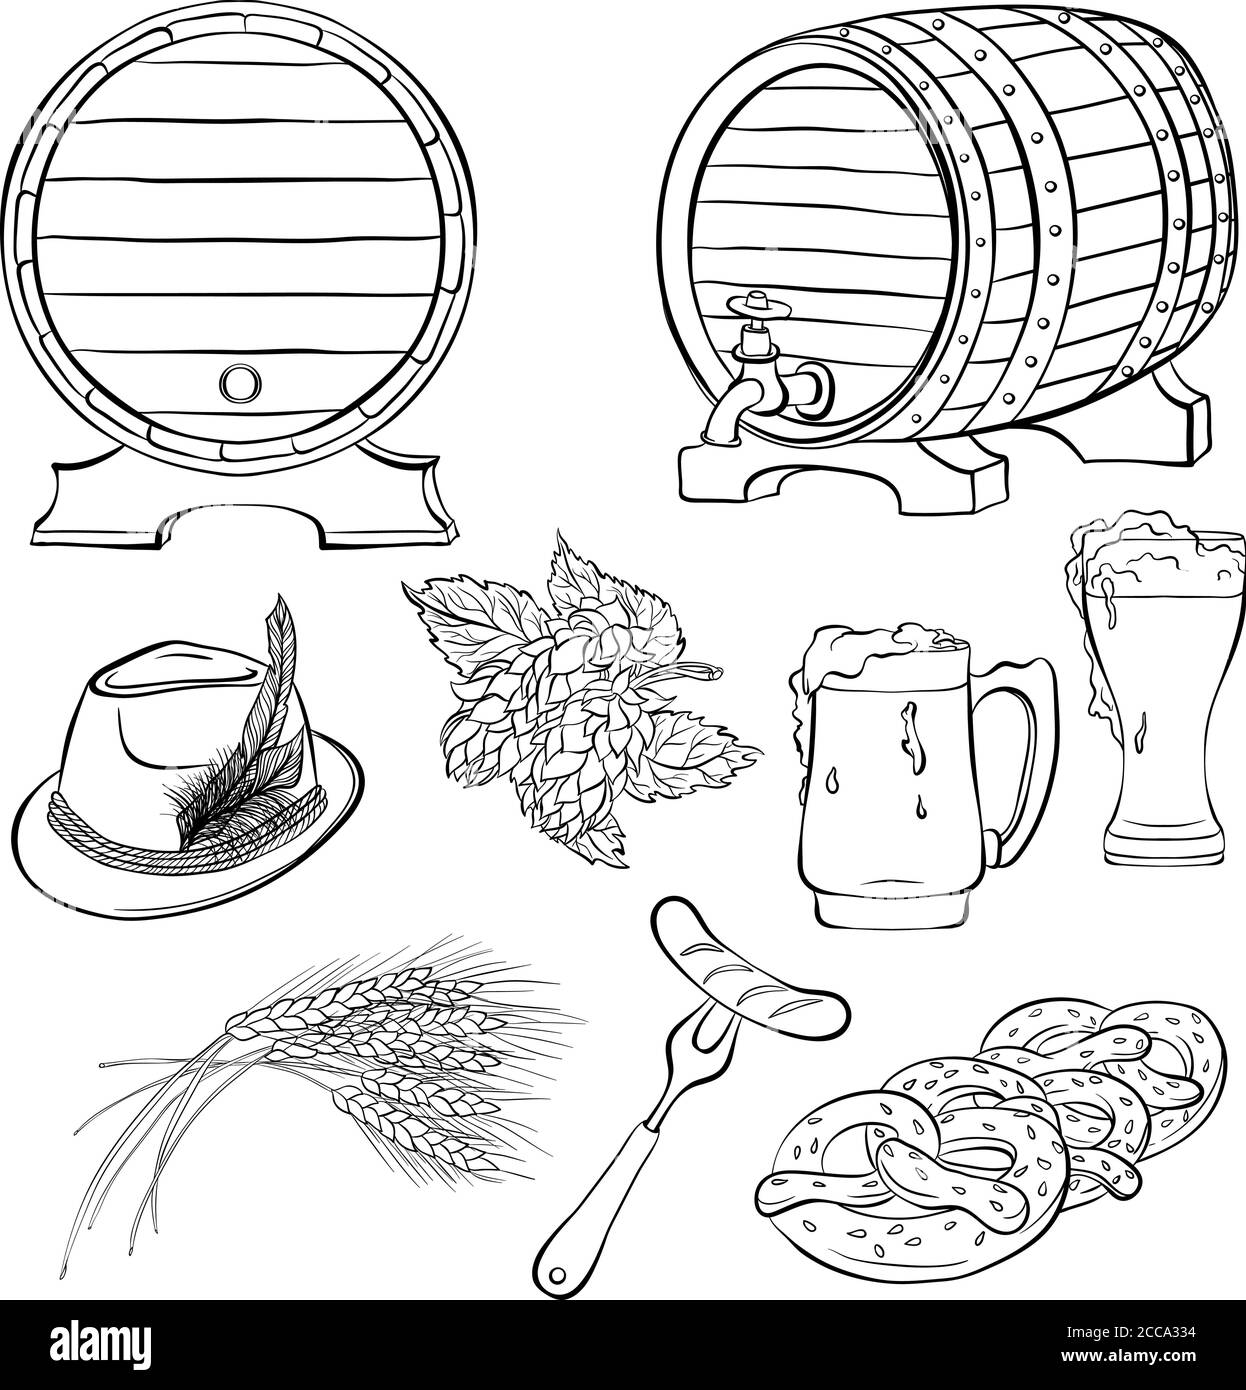 Décor aux éléments traditionnels du festival de la bière Oktoberfest. Style art de ligne. Illustration vectorielle dessinée à la main isolée sur fond blanc Illustration de Vecteur